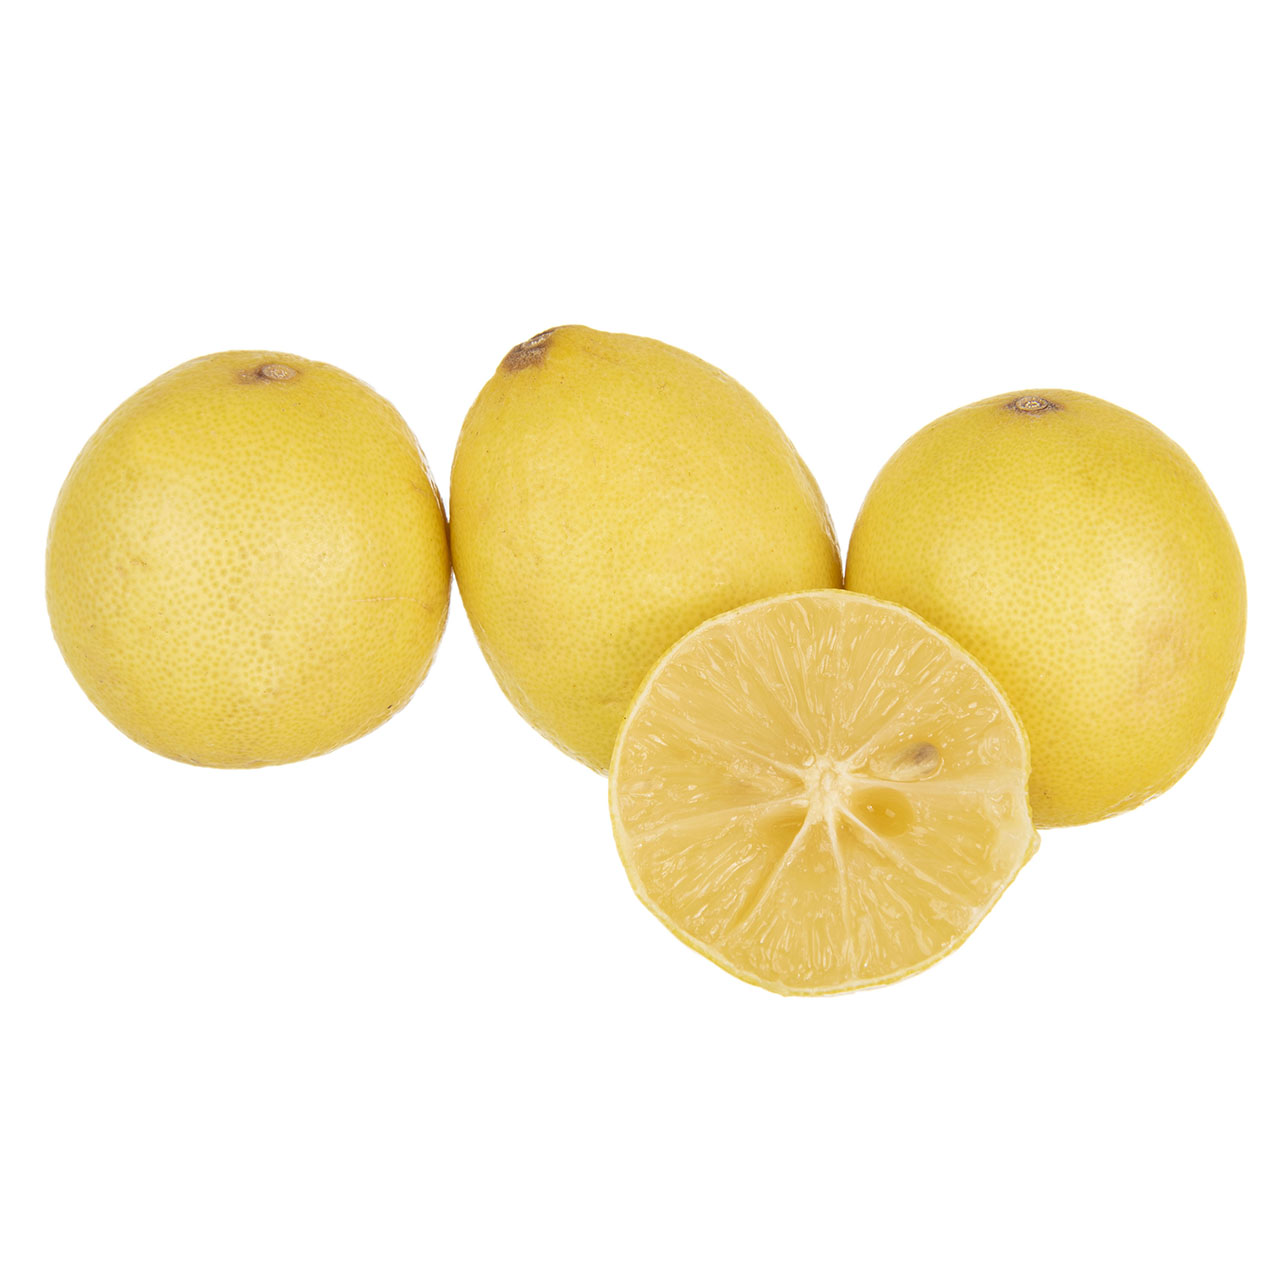 لیمو ترش سنگی فله - 500 گرم